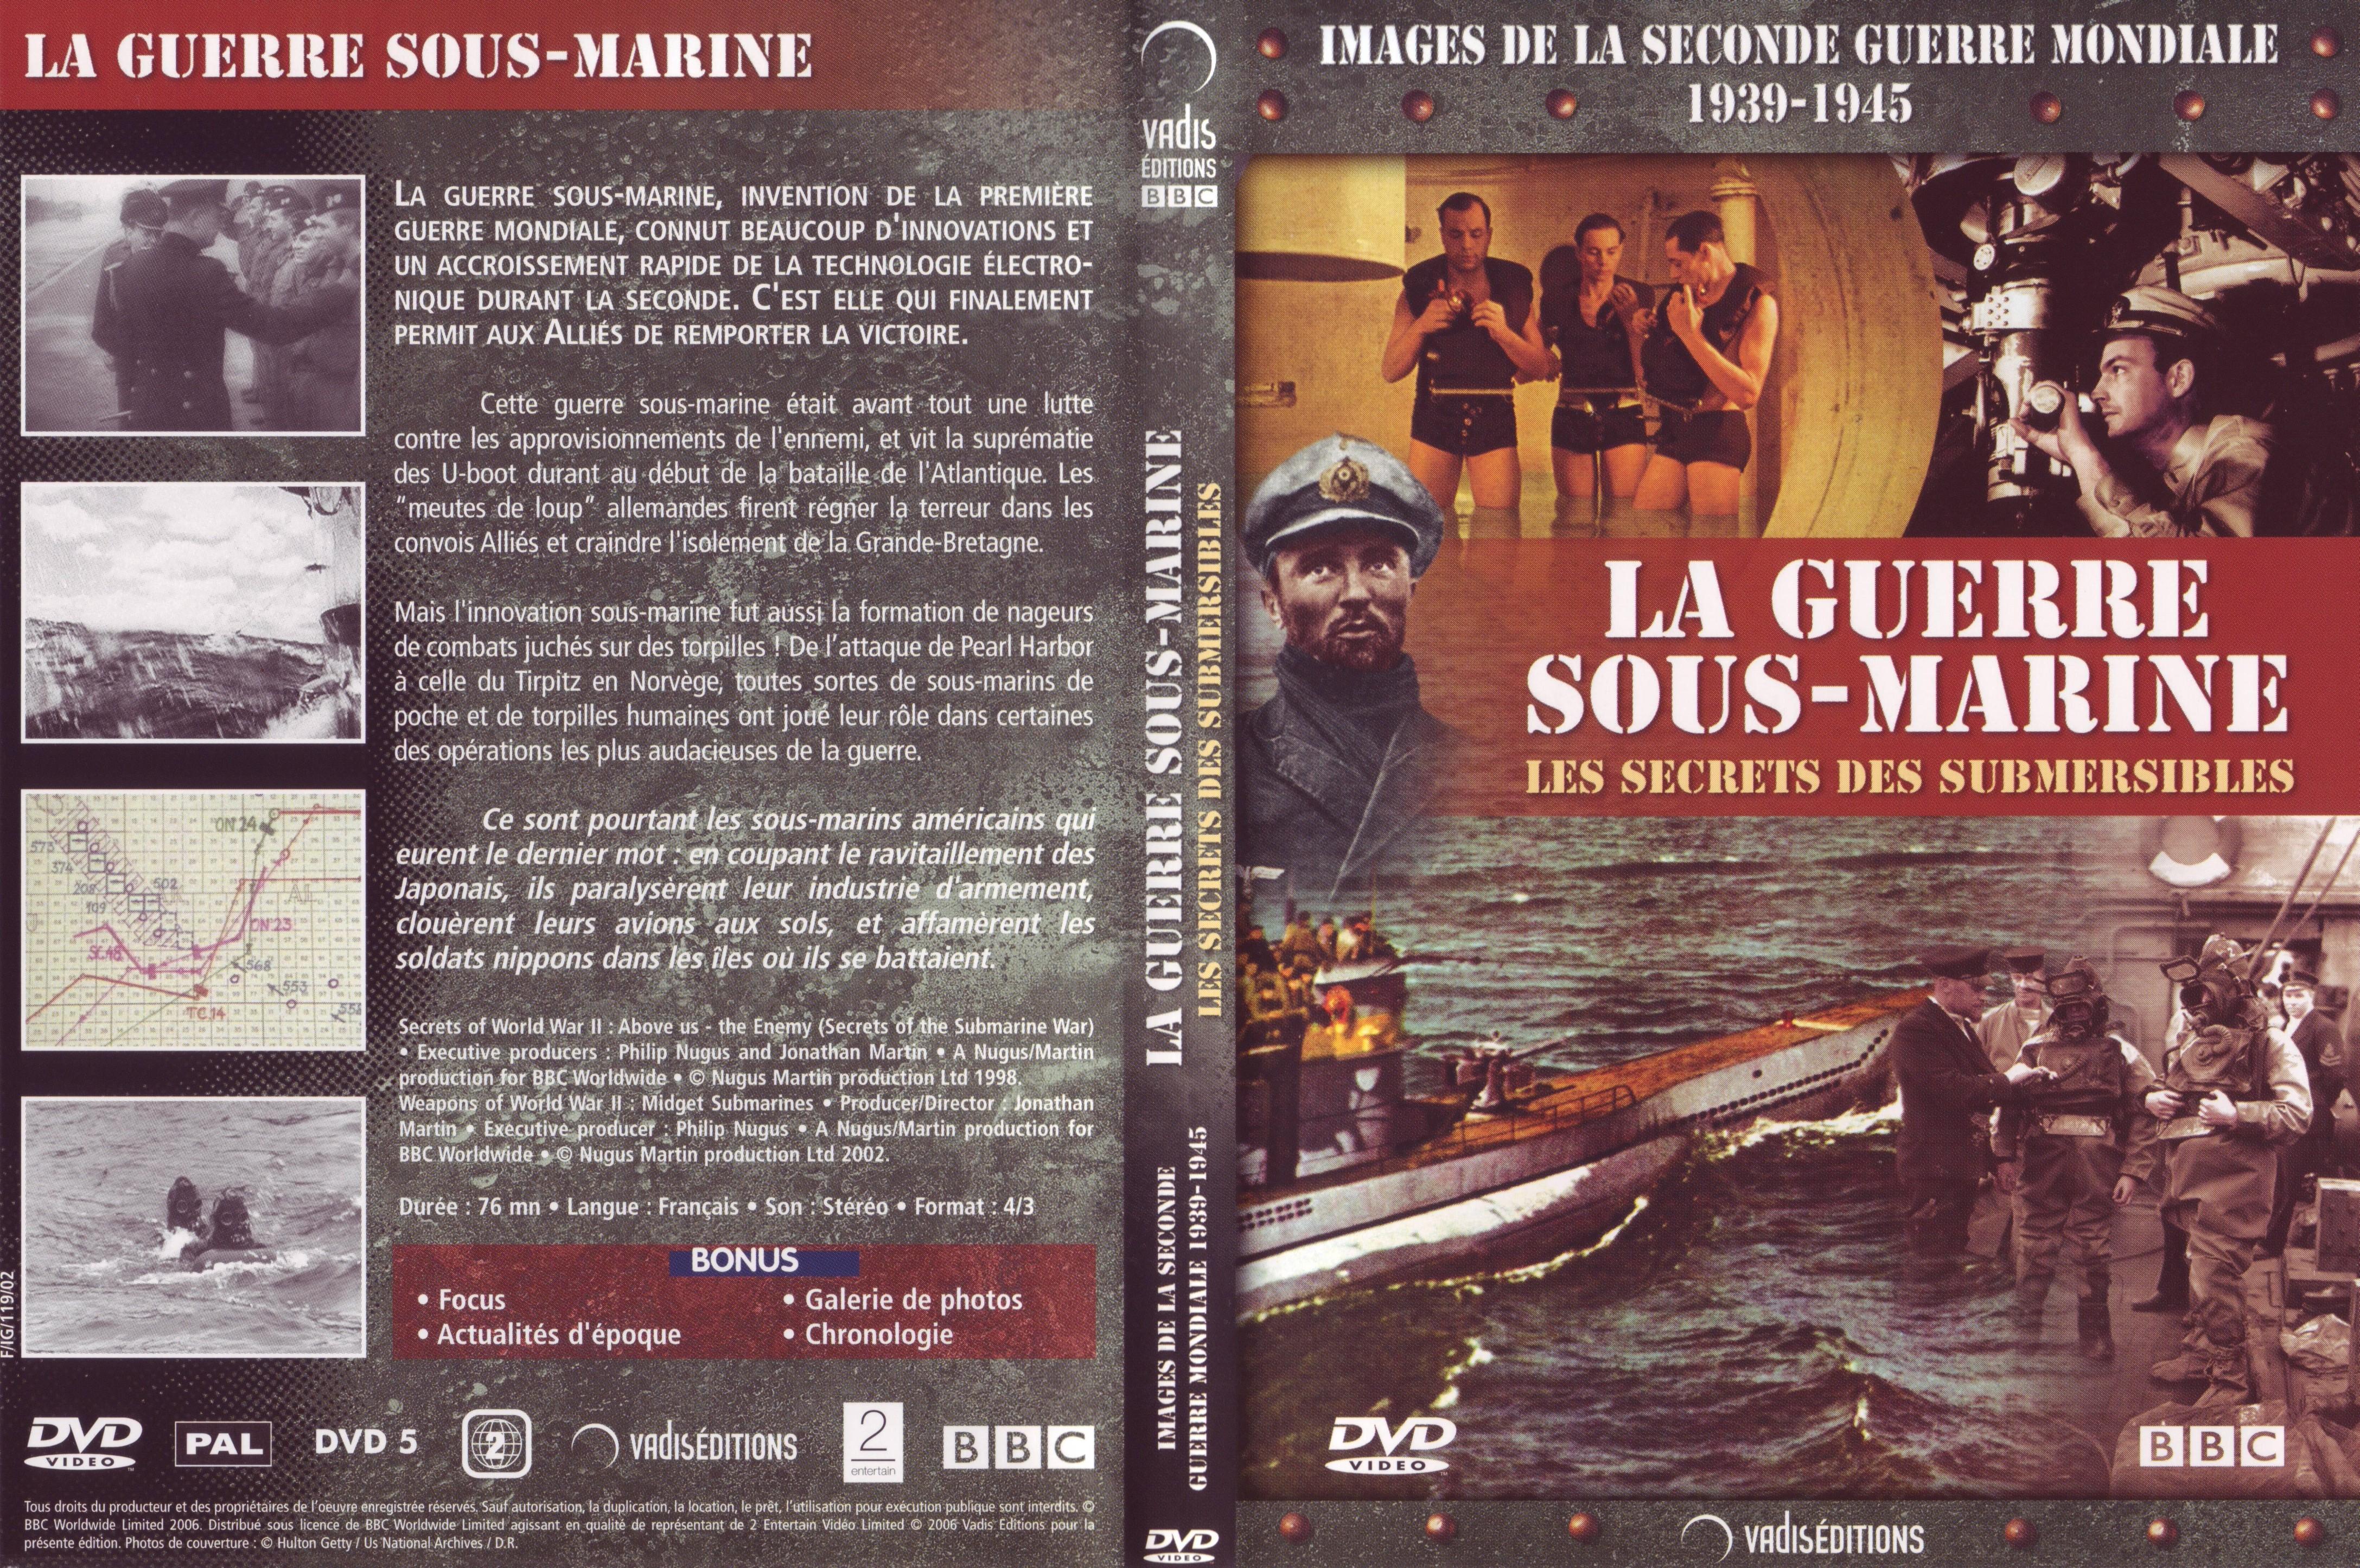 Jaquette DVD Images de la seconde guerre mondiale - La guerre sous-marine